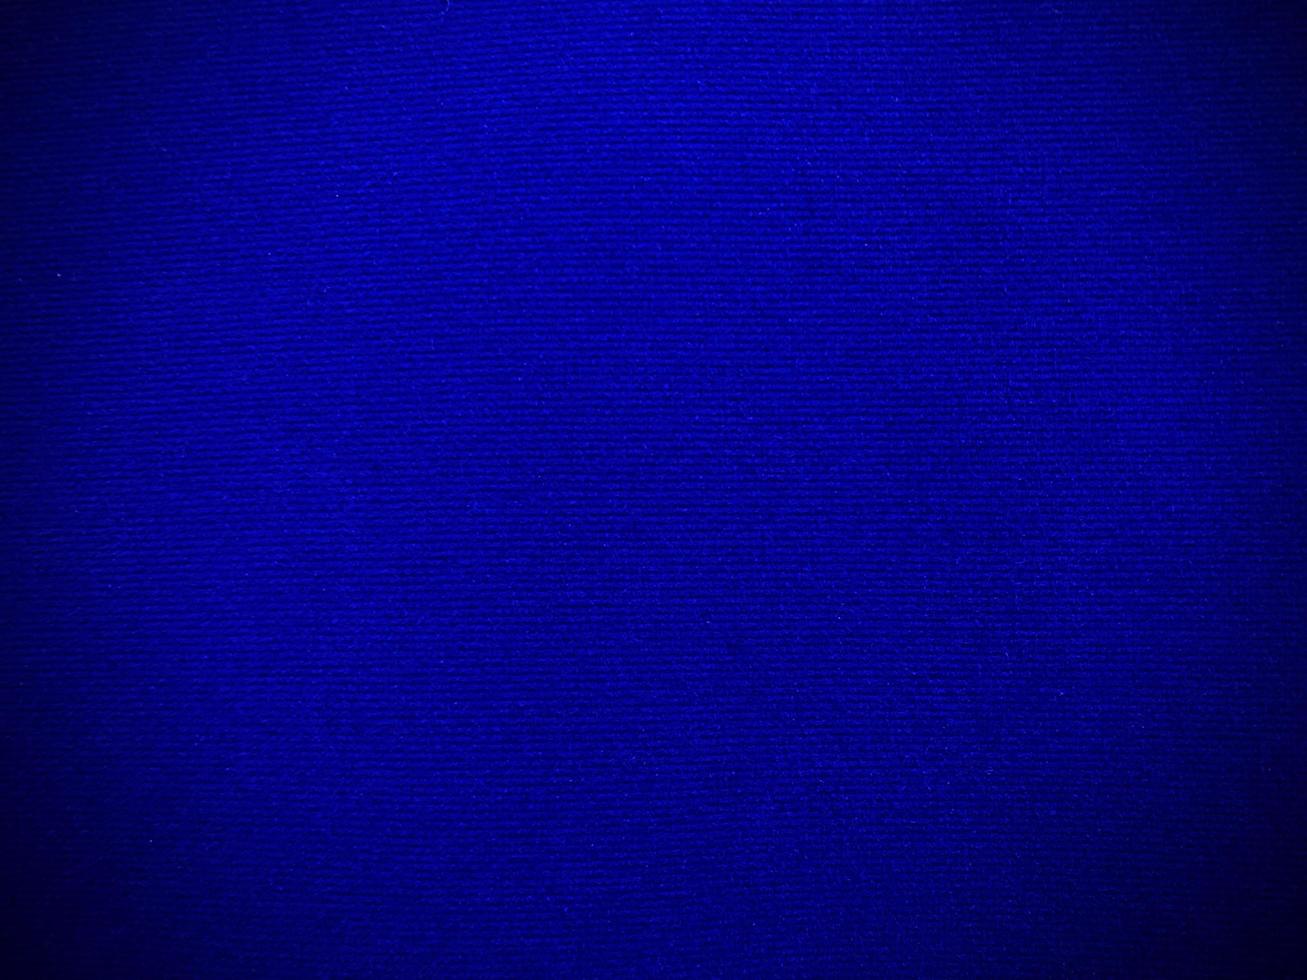 textura de tela de terciopelo azul oscuro utilizada como fondo. fondo de tela azul oscuro vacío de material textil suave y liso. hay espacio para el texto. foto